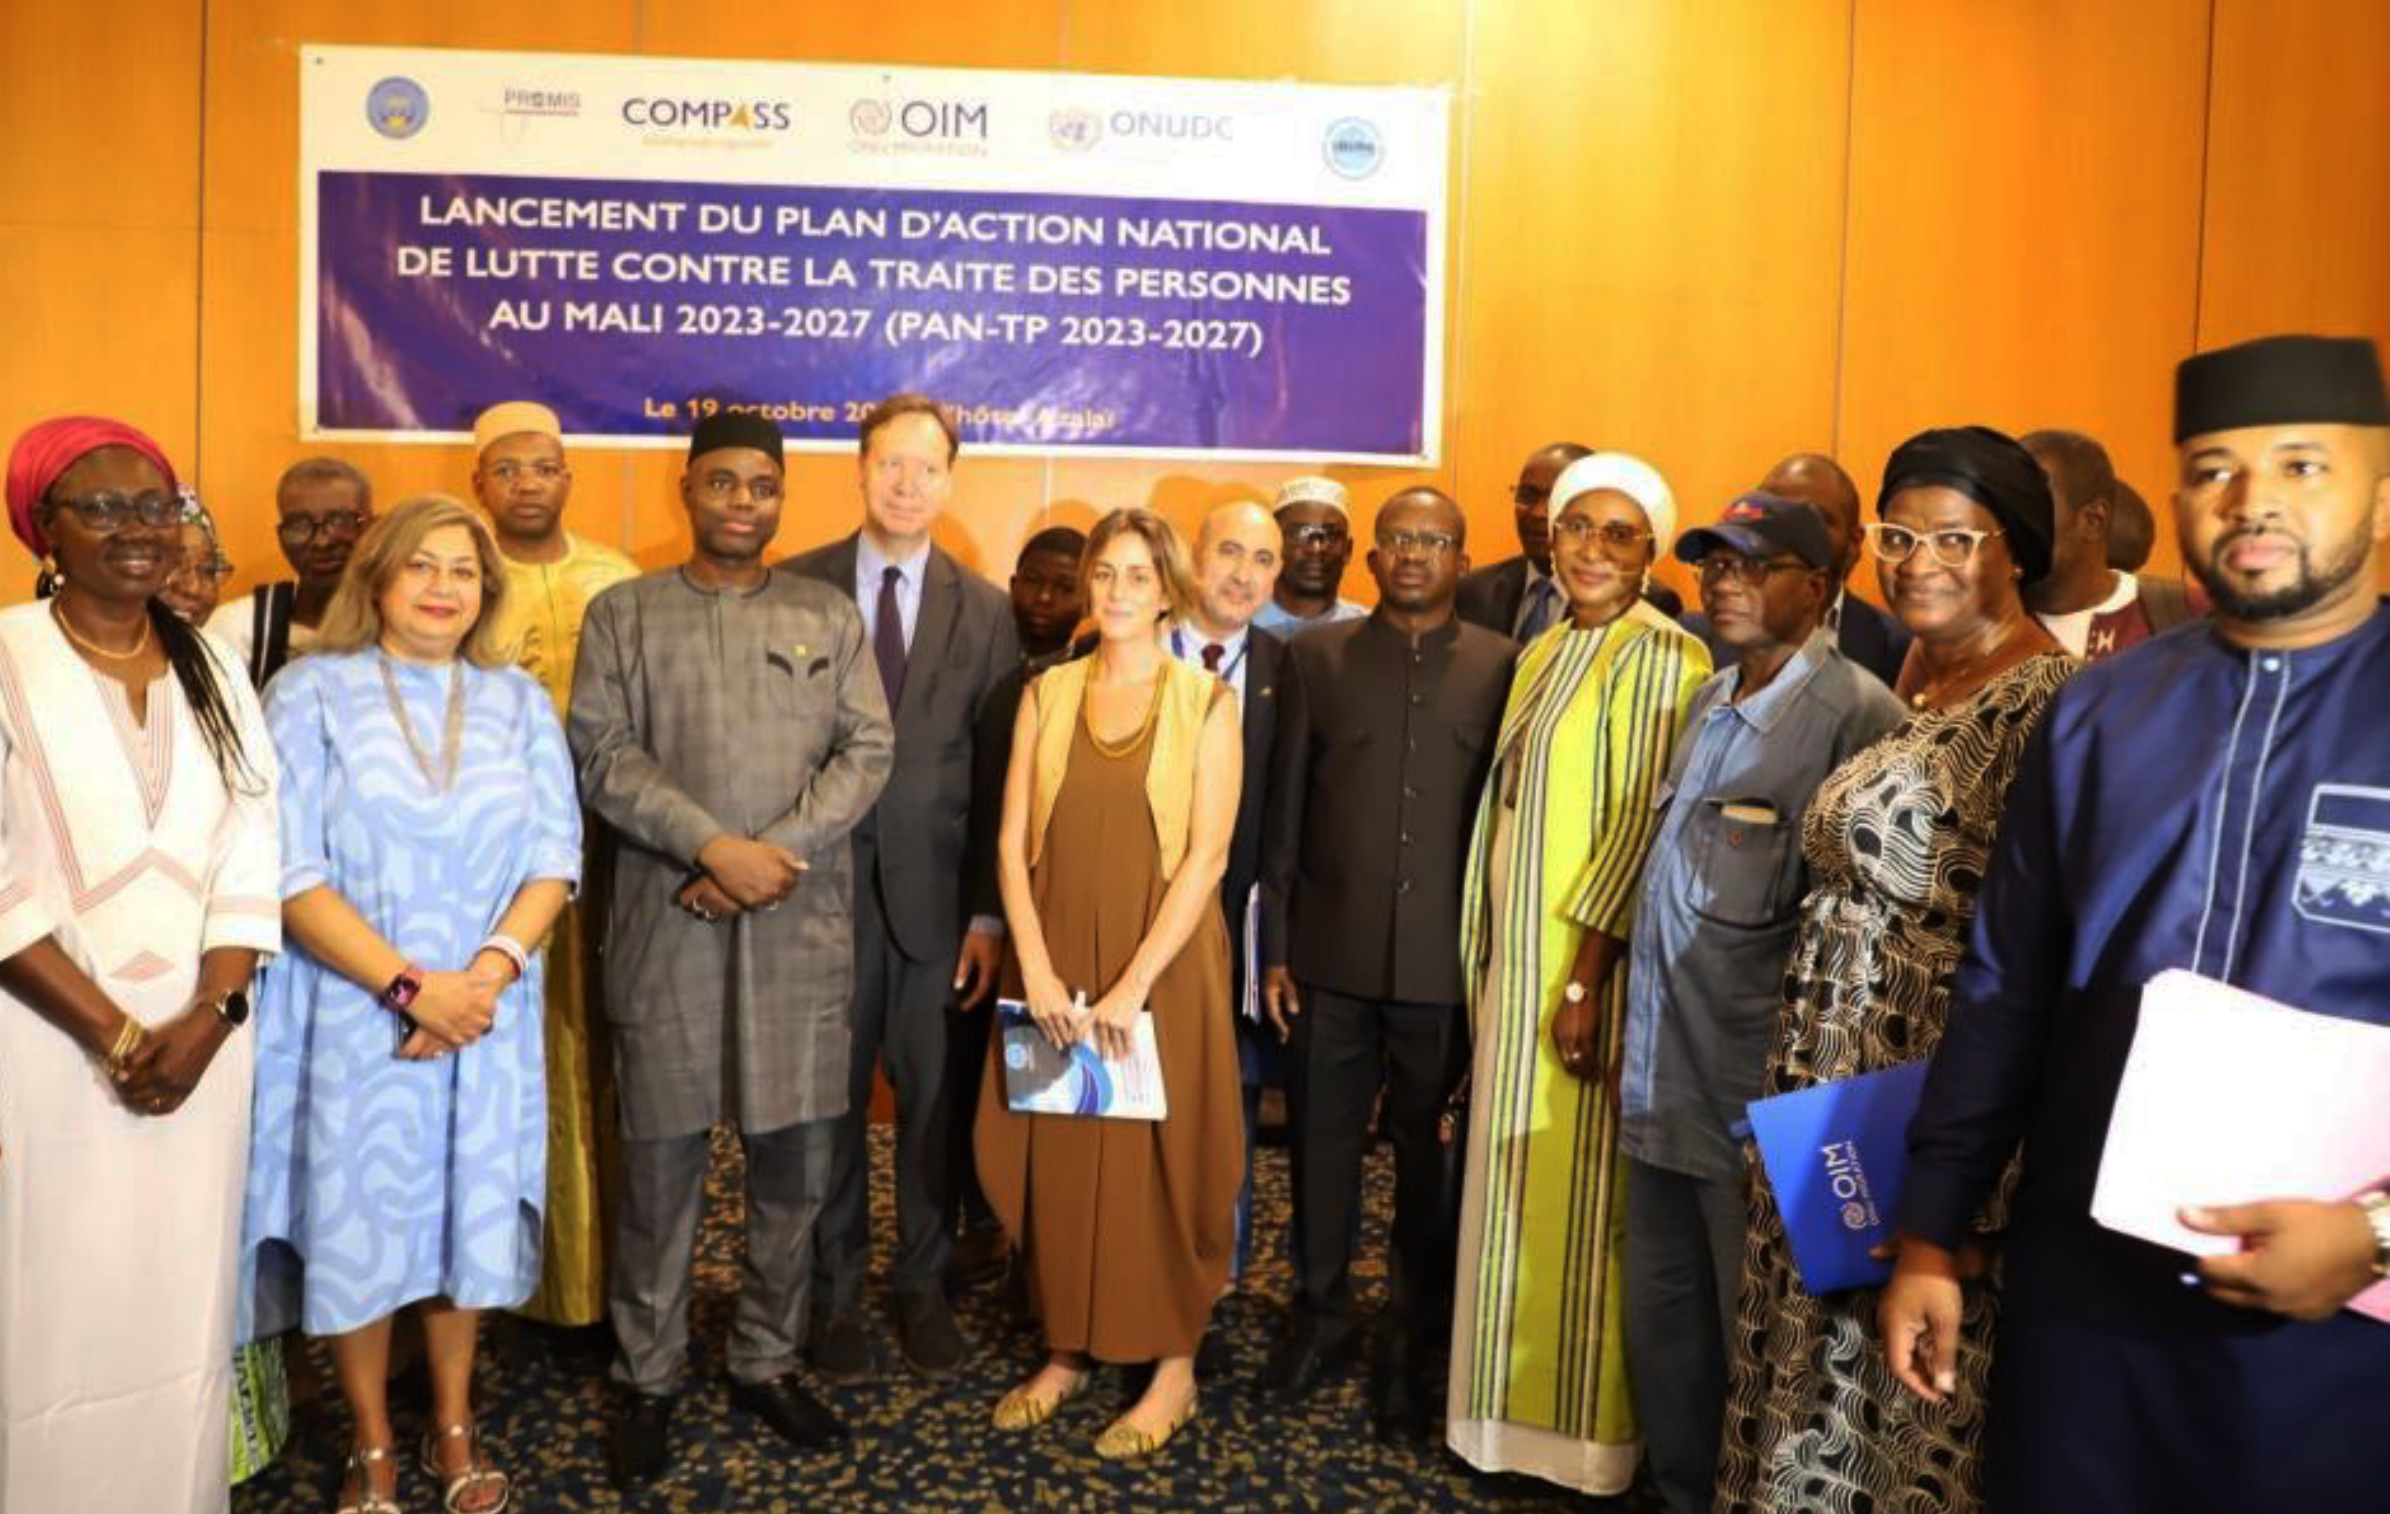 Le Mali lance un Plan d'action national de lutte contre la traite des personnes 2023-2027 avec l’appui de l’OIM et de l’ONUDC